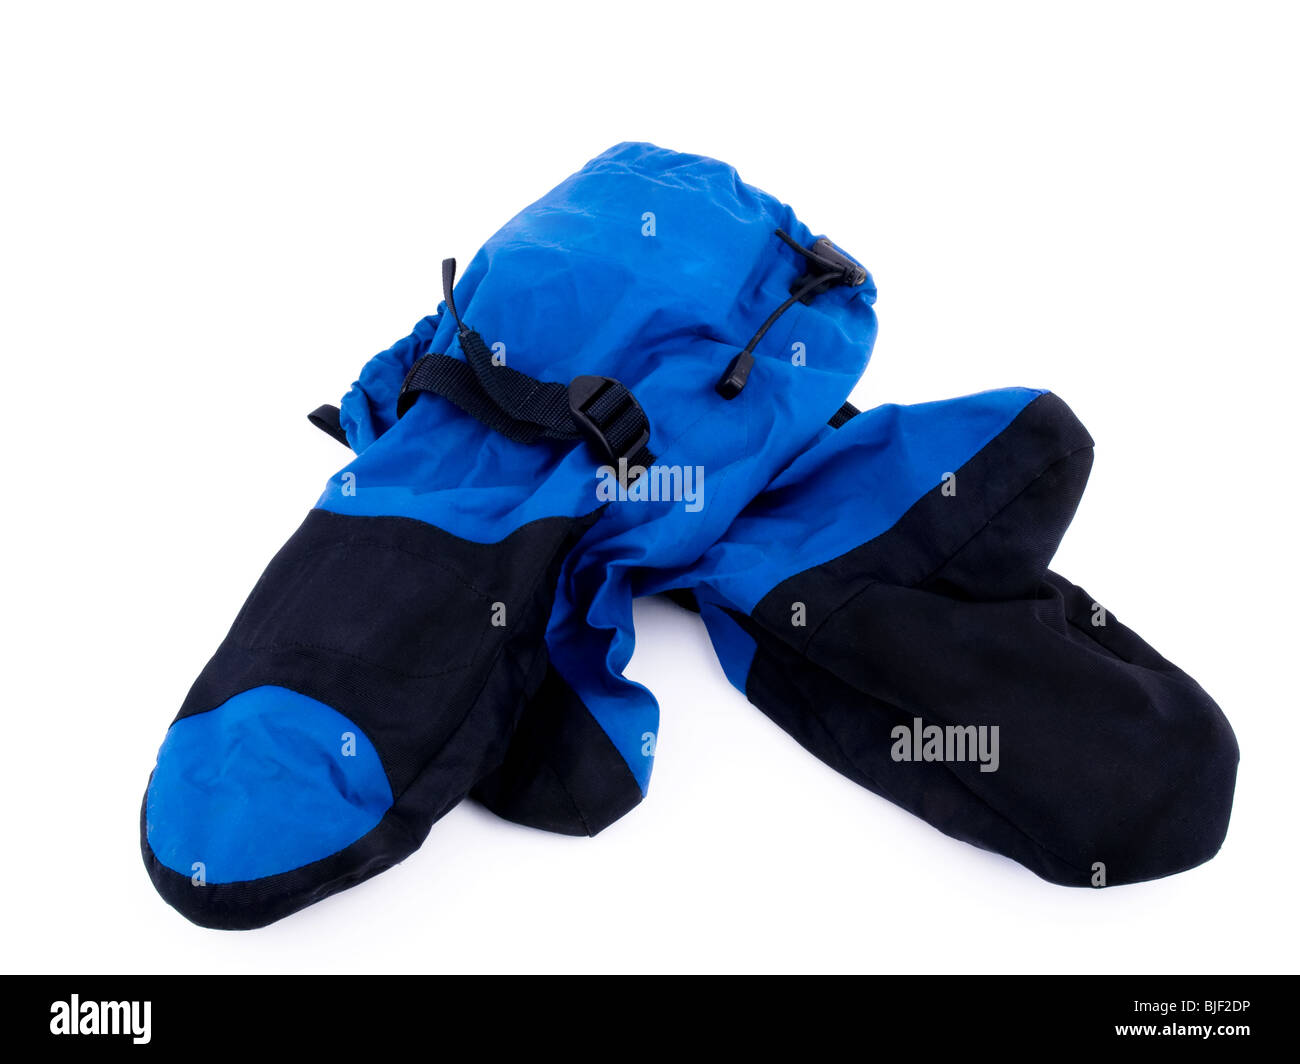 Fachmännische outdoor-Ausrüstung - Handschuhe auf weißem Hintergrund. Stockfoto